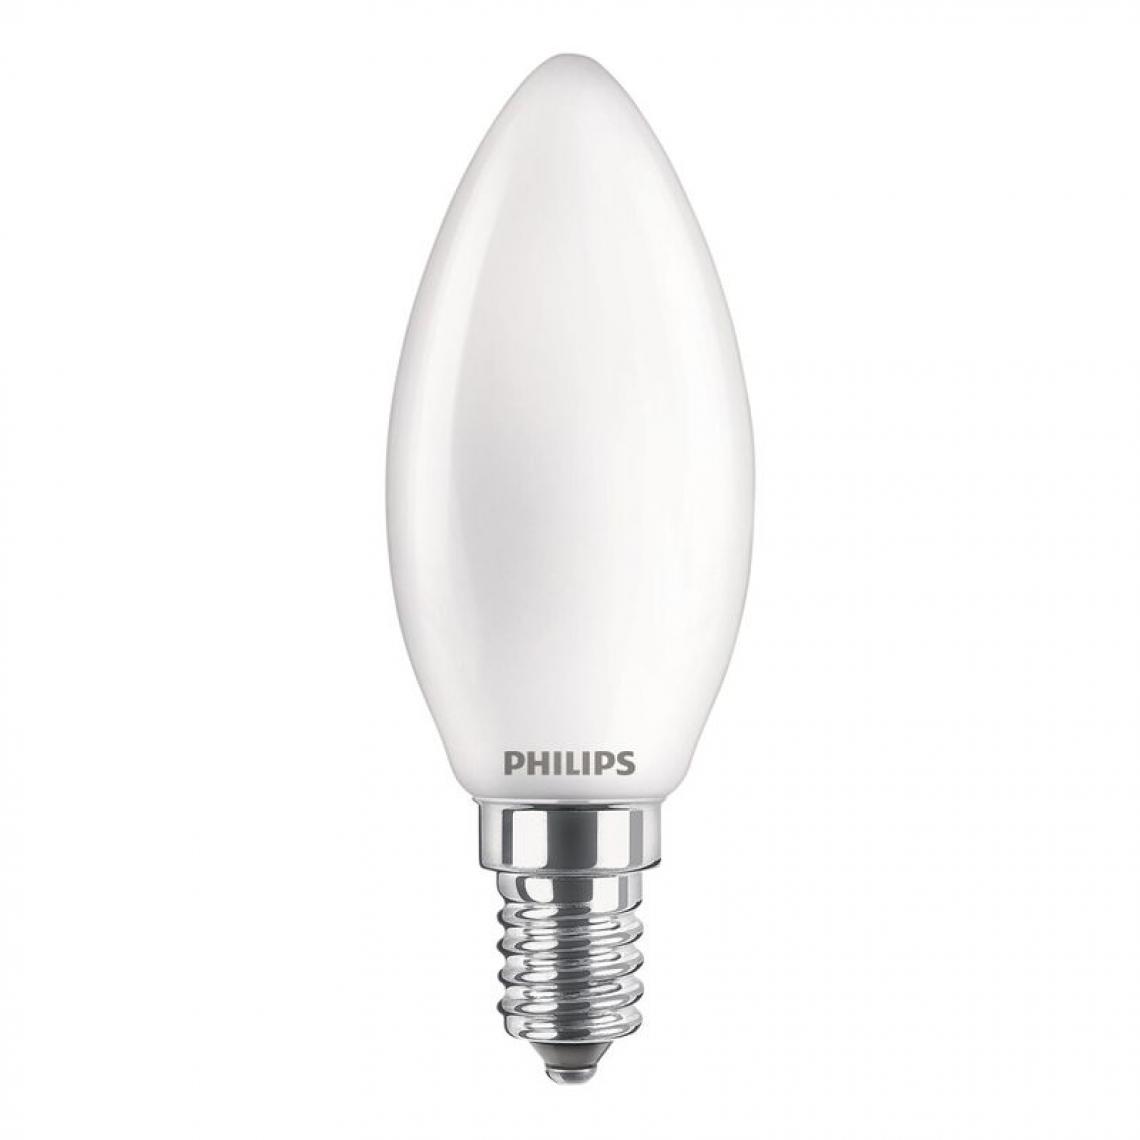 Philips - Ampoule LED dépolie E14 PHILIPS forme flamme EQ25W - Ampoules LED